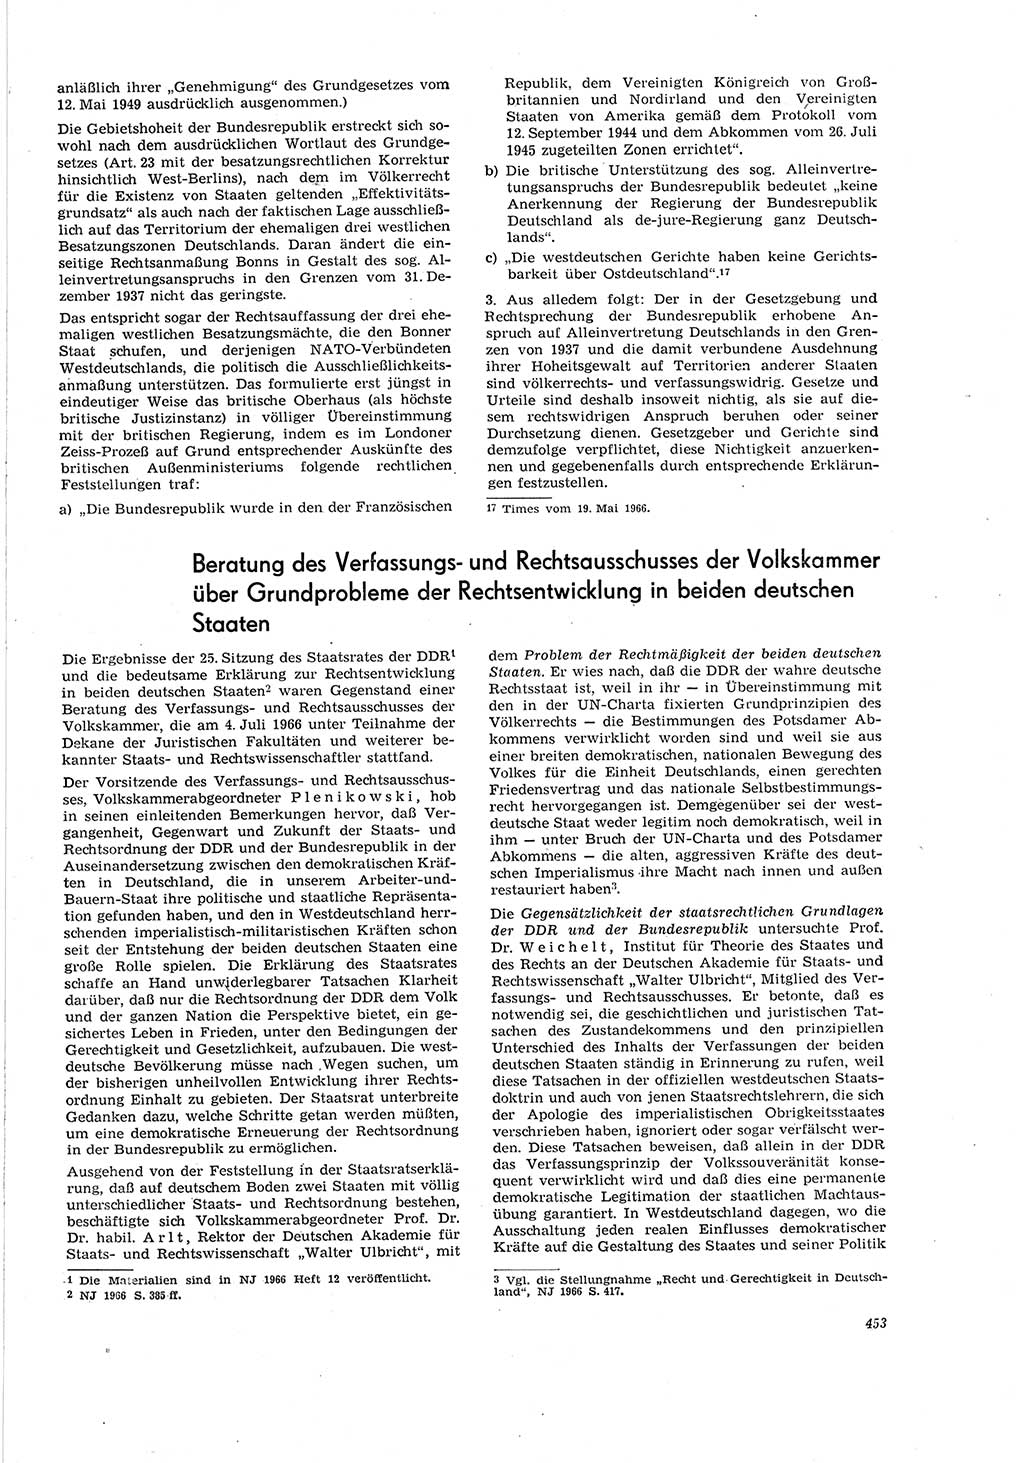 Neue Justiz (NJ), Zeitschrift für Recht und Rechtswissenschaft [Deutsche Demokratische Republik (DDR)], 20. Jahrgang 1966, Seite 453 (NJ DDR 1966, S. 453)